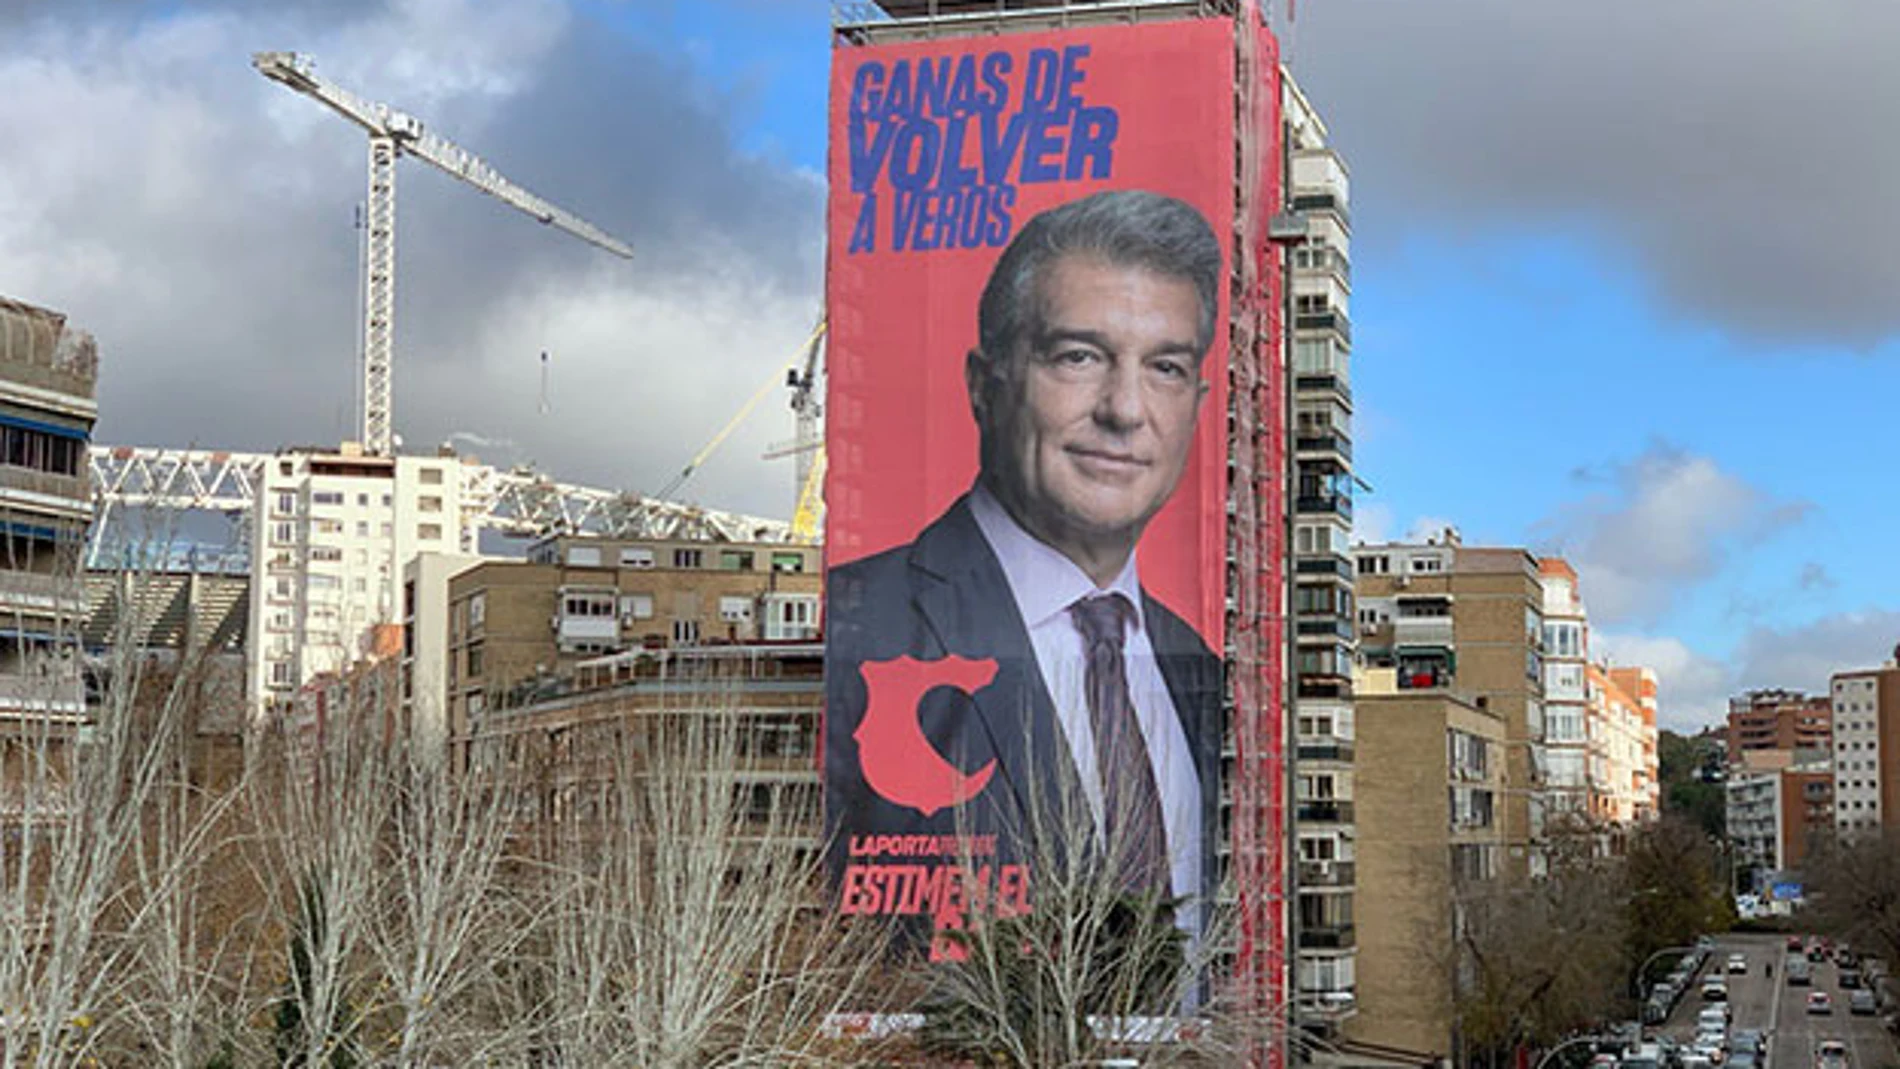 Anuncio de la candidatura de Joan Laporta situado junto al Santiago Bernabéu.